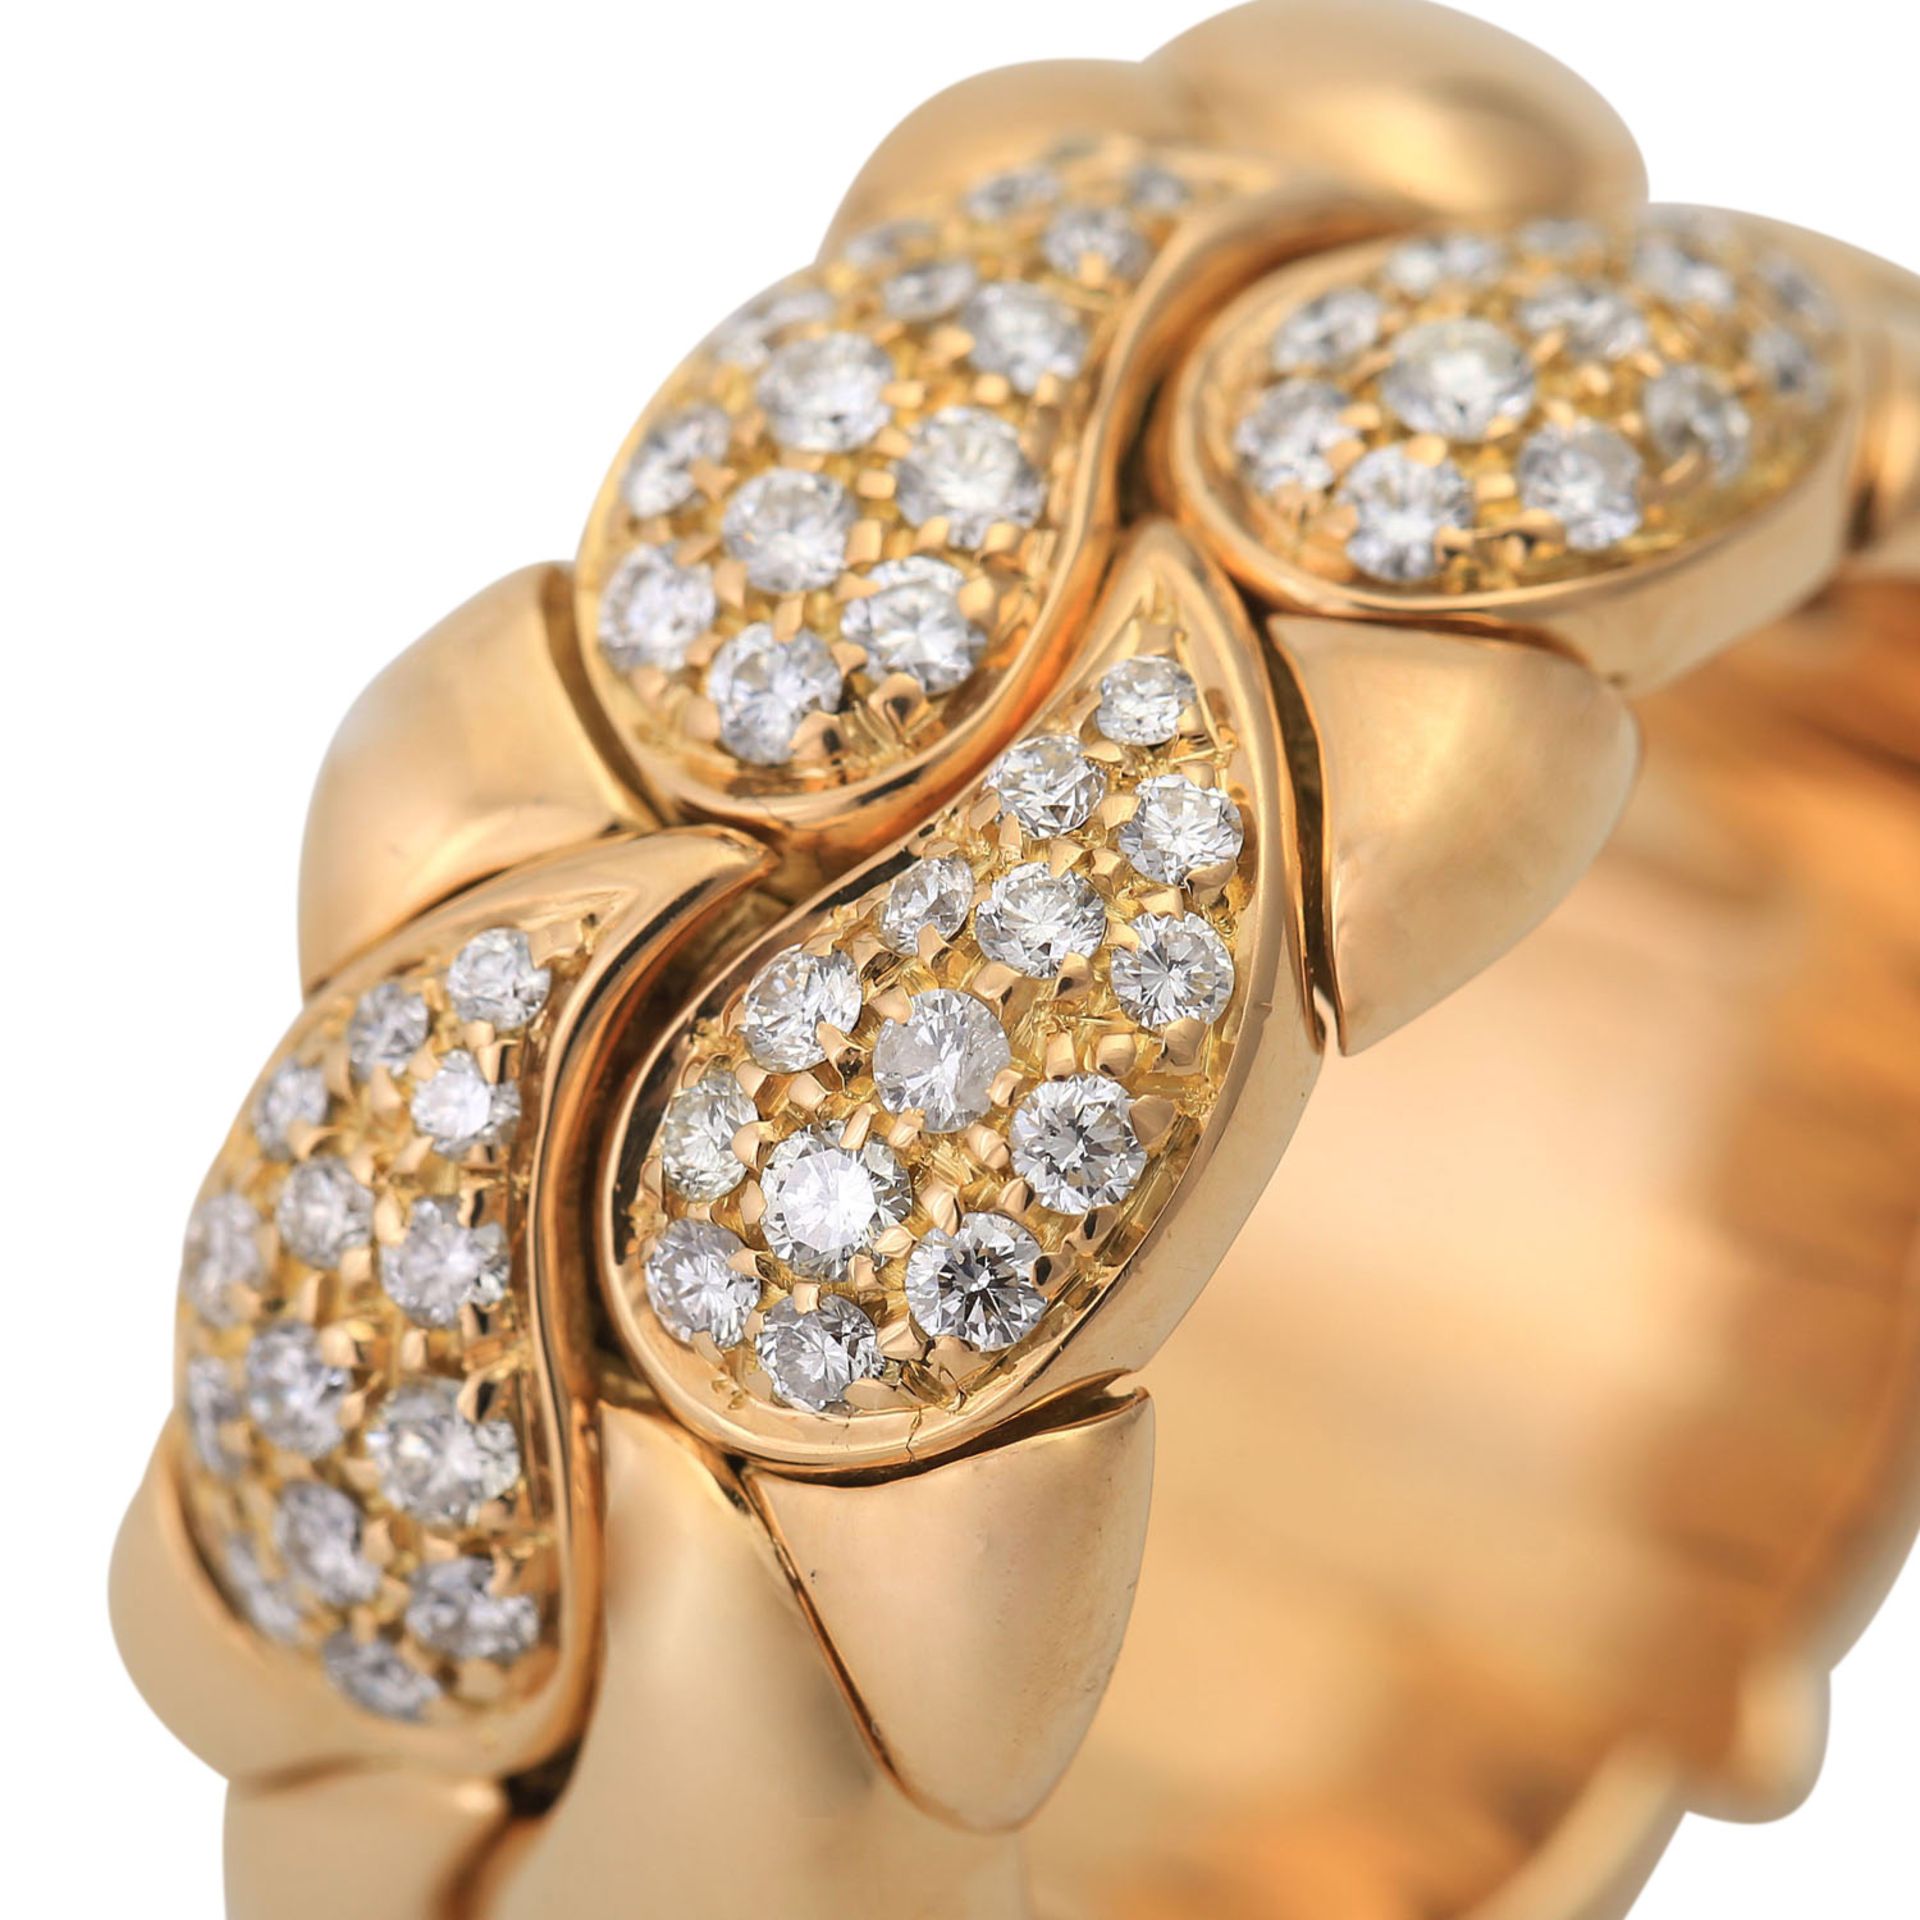 CHOPARD Ring "Casmir" mit Brillantbesatz,GG, NP ca. 8.000 €, RW: 62, nummeriert 2286703. Offene - Bild 6 aus 6